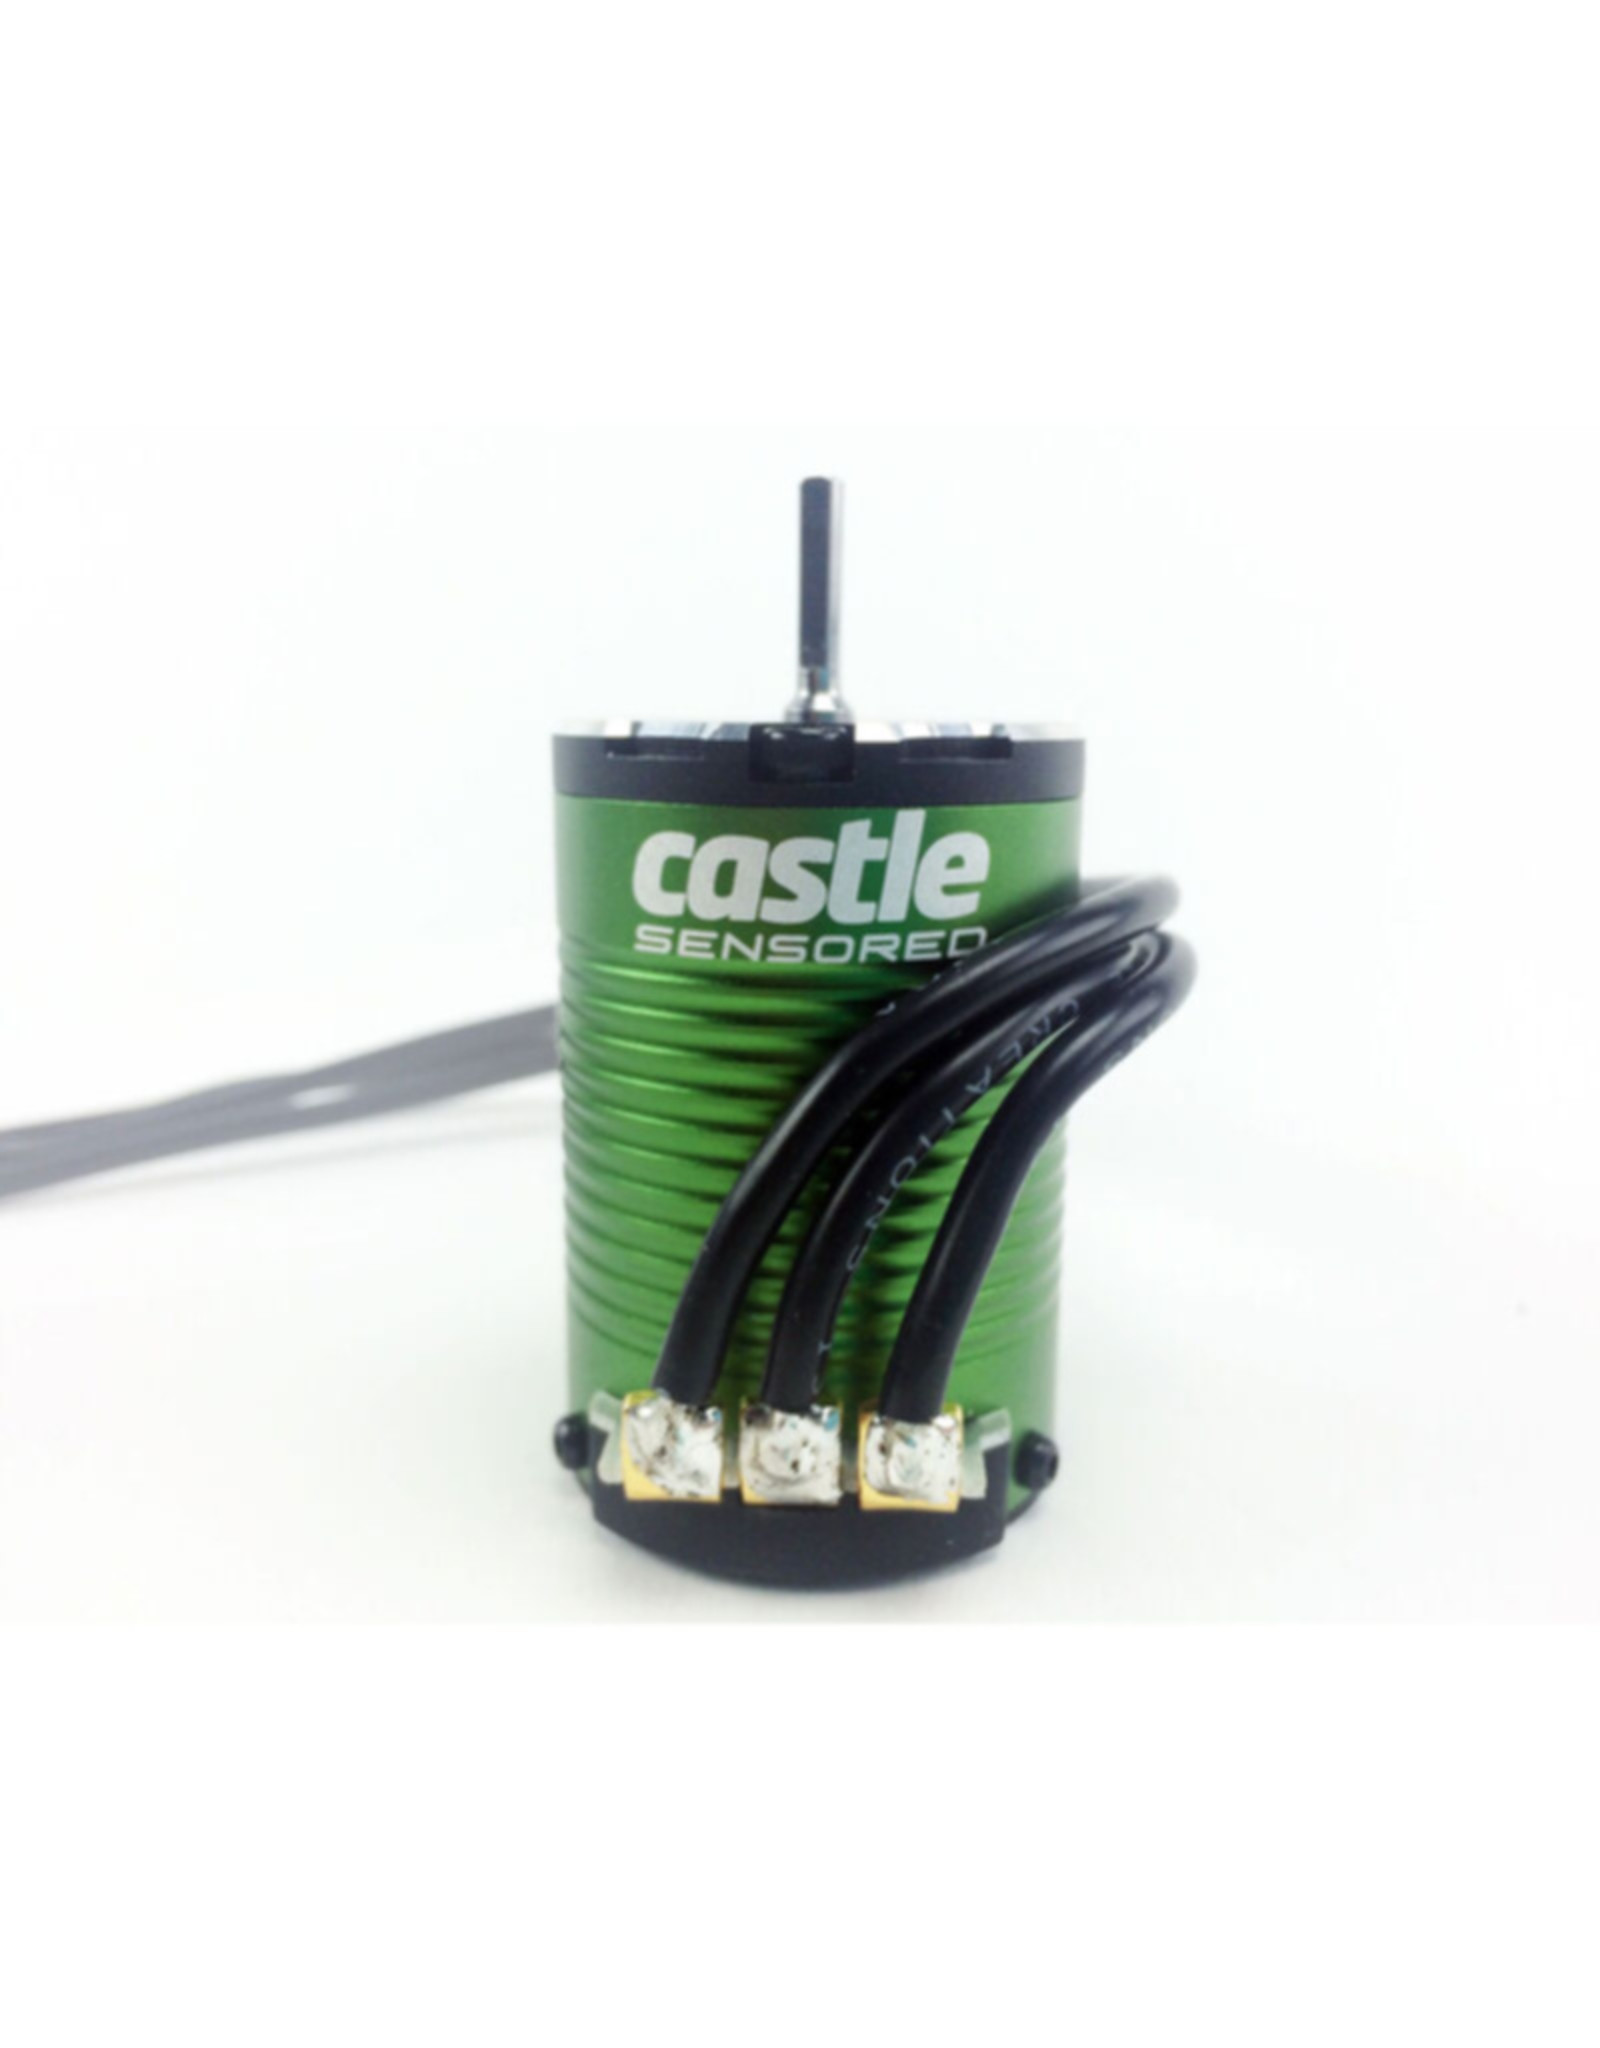 Castle Creations CSE060006600 4-Pole Sensored BL Motor,1410-3800Kv,5mm